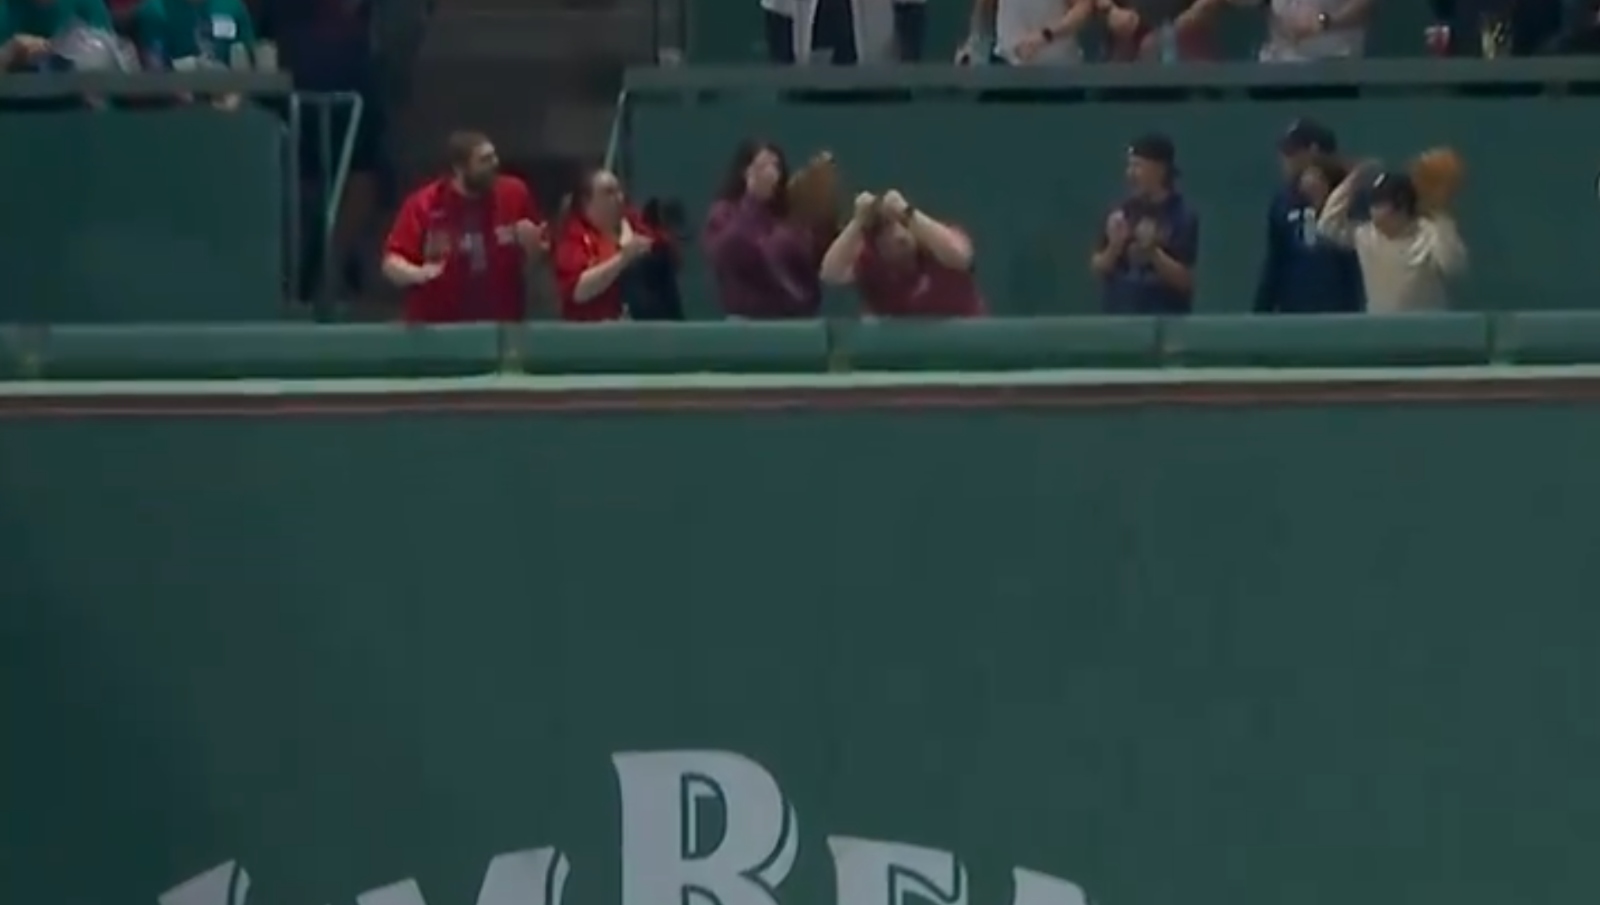 Boston Red Sox fan drops Green Monster ball